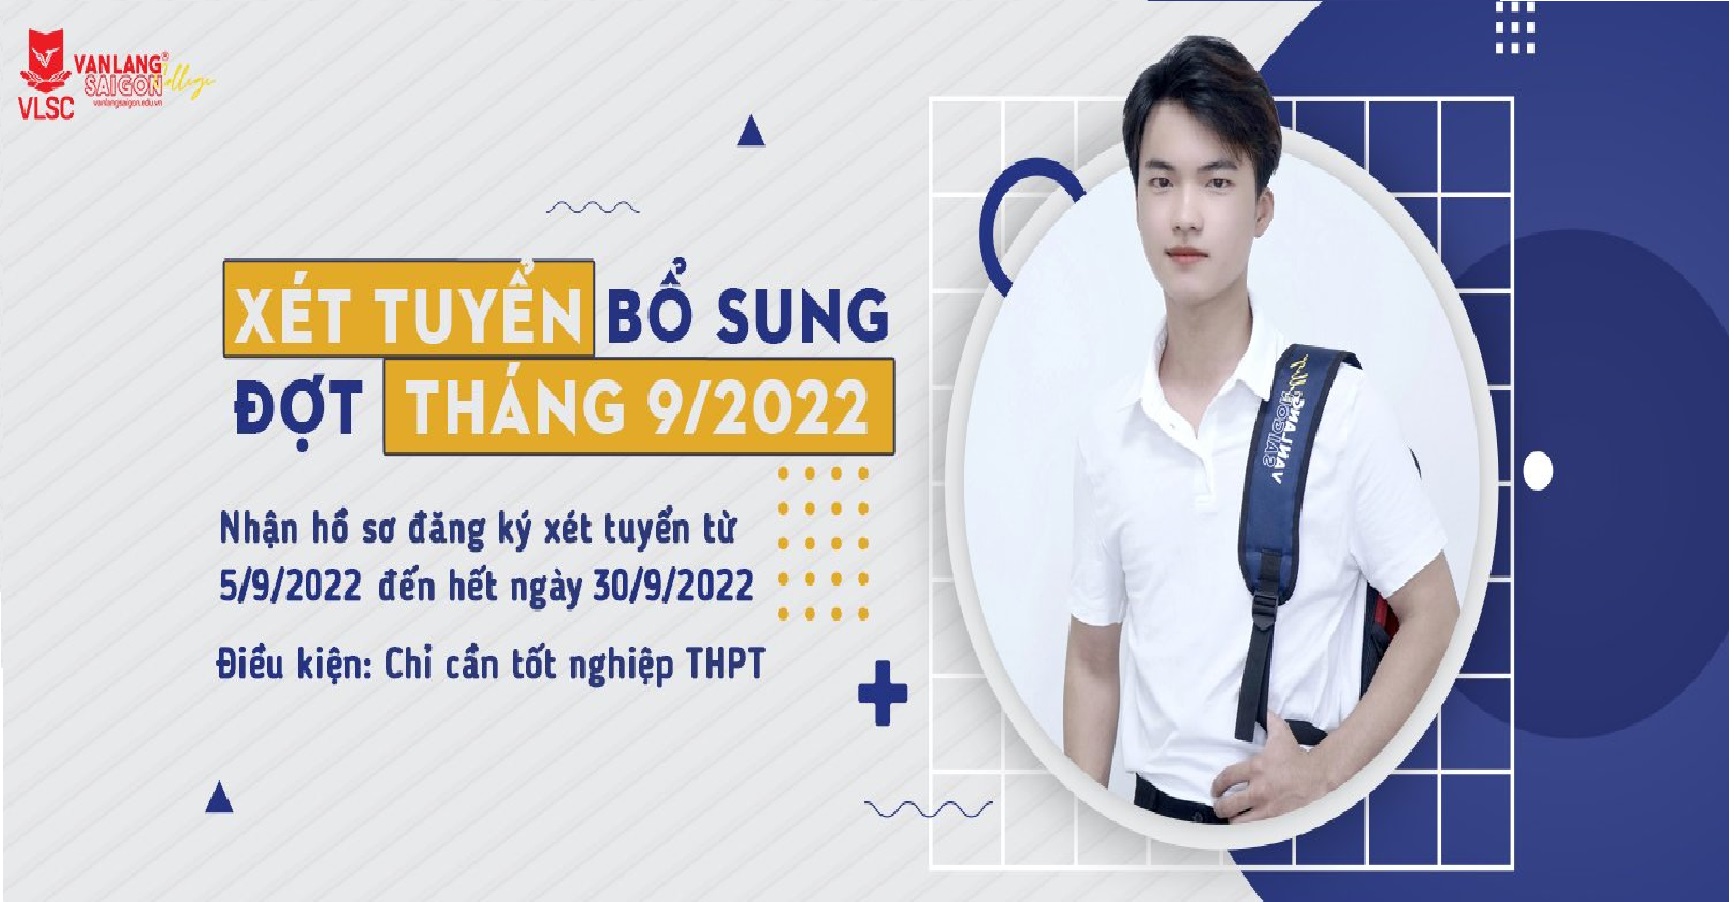 Trường Cao đẳng Văn Lang Sài Gòn xét tuyển bổ sung đợt tháng 10/2022